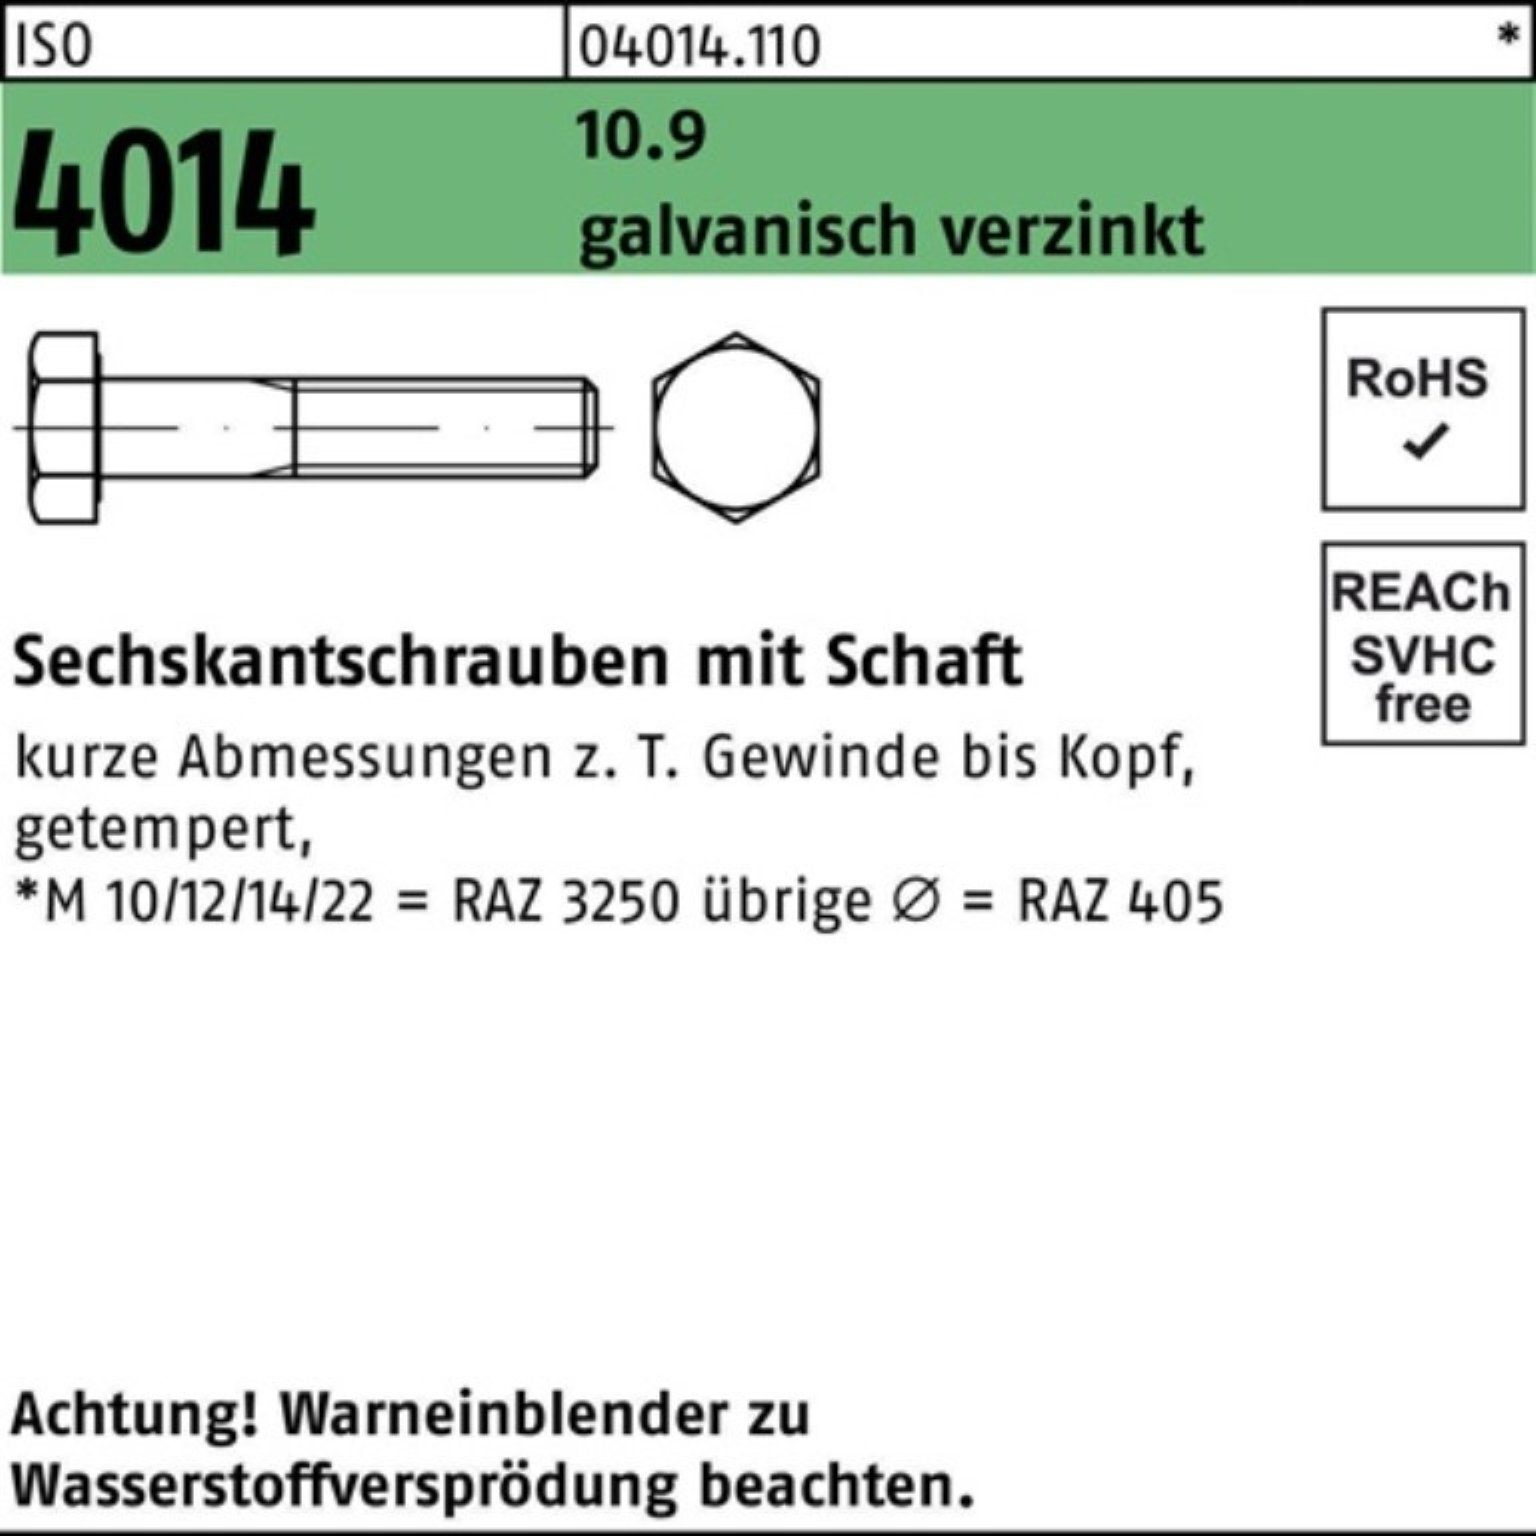 Bufab Sechskantschraube 200er Pack Schaft 55 10.9 galv.verz. 4014 Sechskantschraube 20 ISO M8x